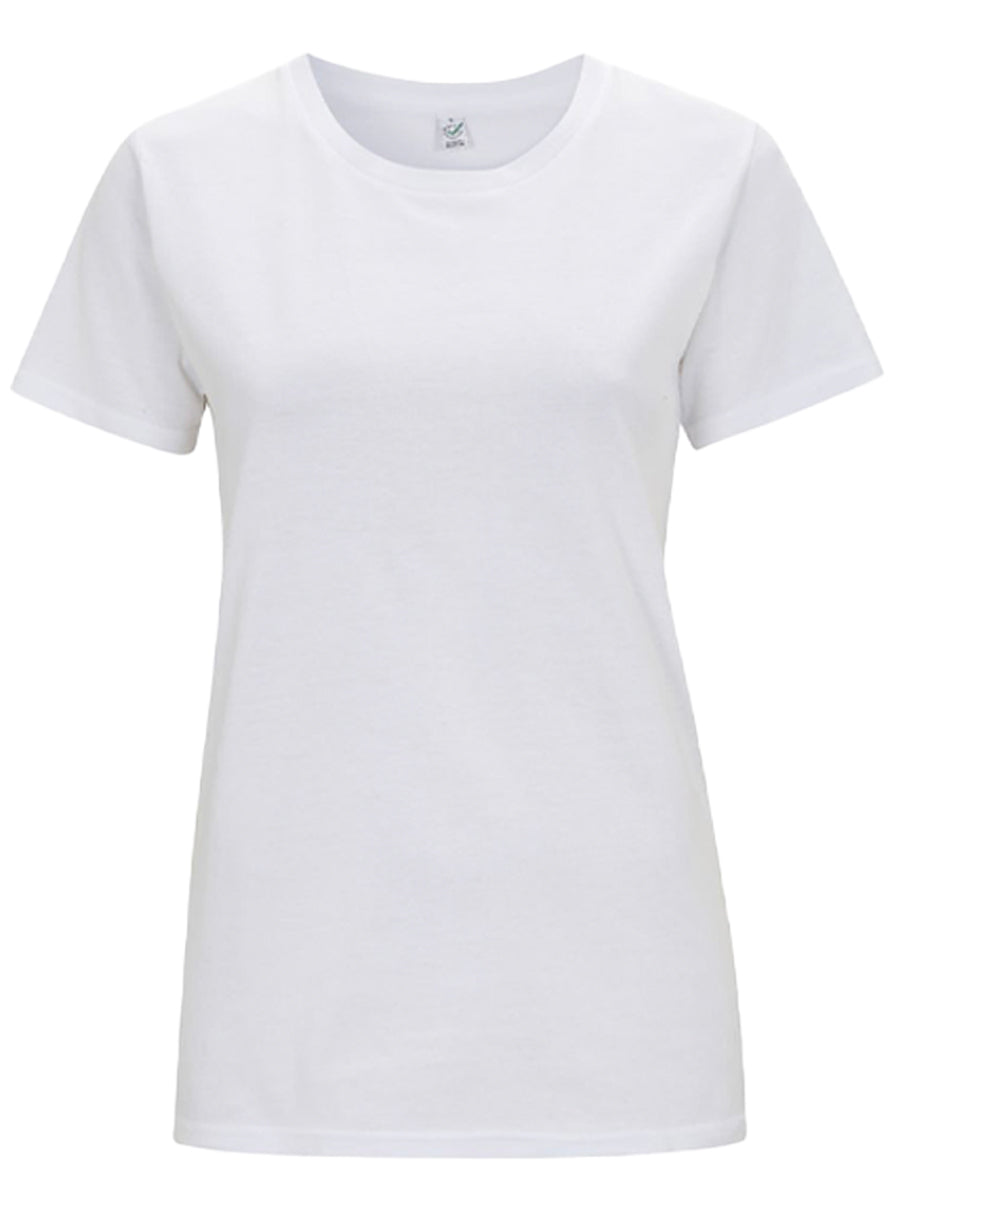 Women's Plain T-Shirt